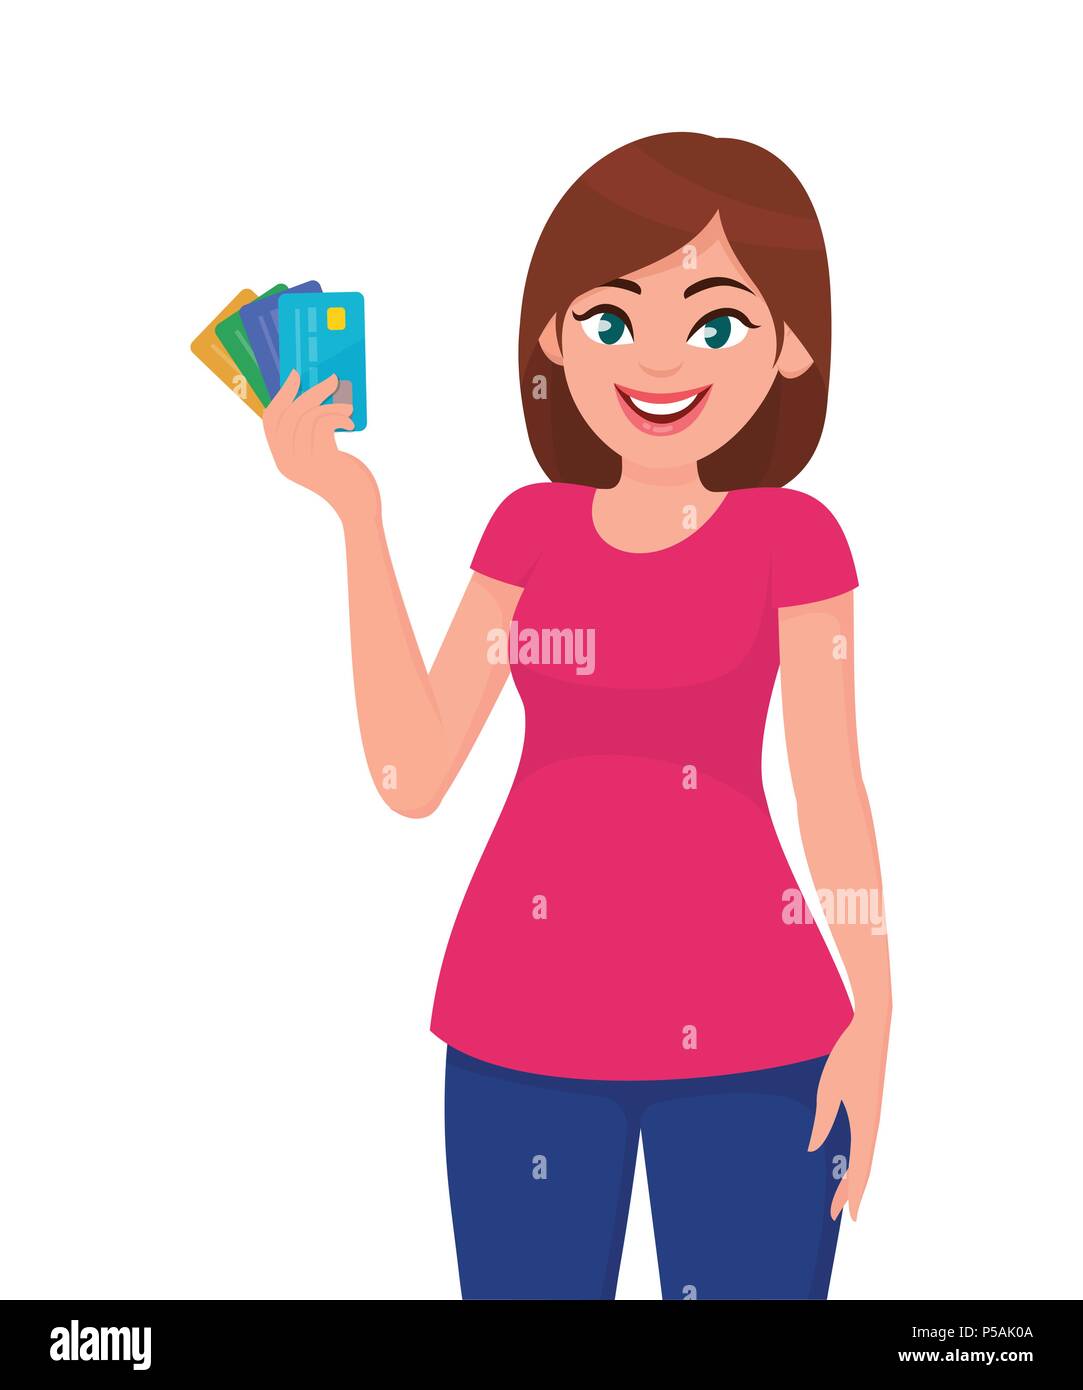 Junge Frau mit Bank credit/debit Karten in der Hand. Business und Finanzen Konzept Vektor Grafik im Comic-Stil. Stock Vektor